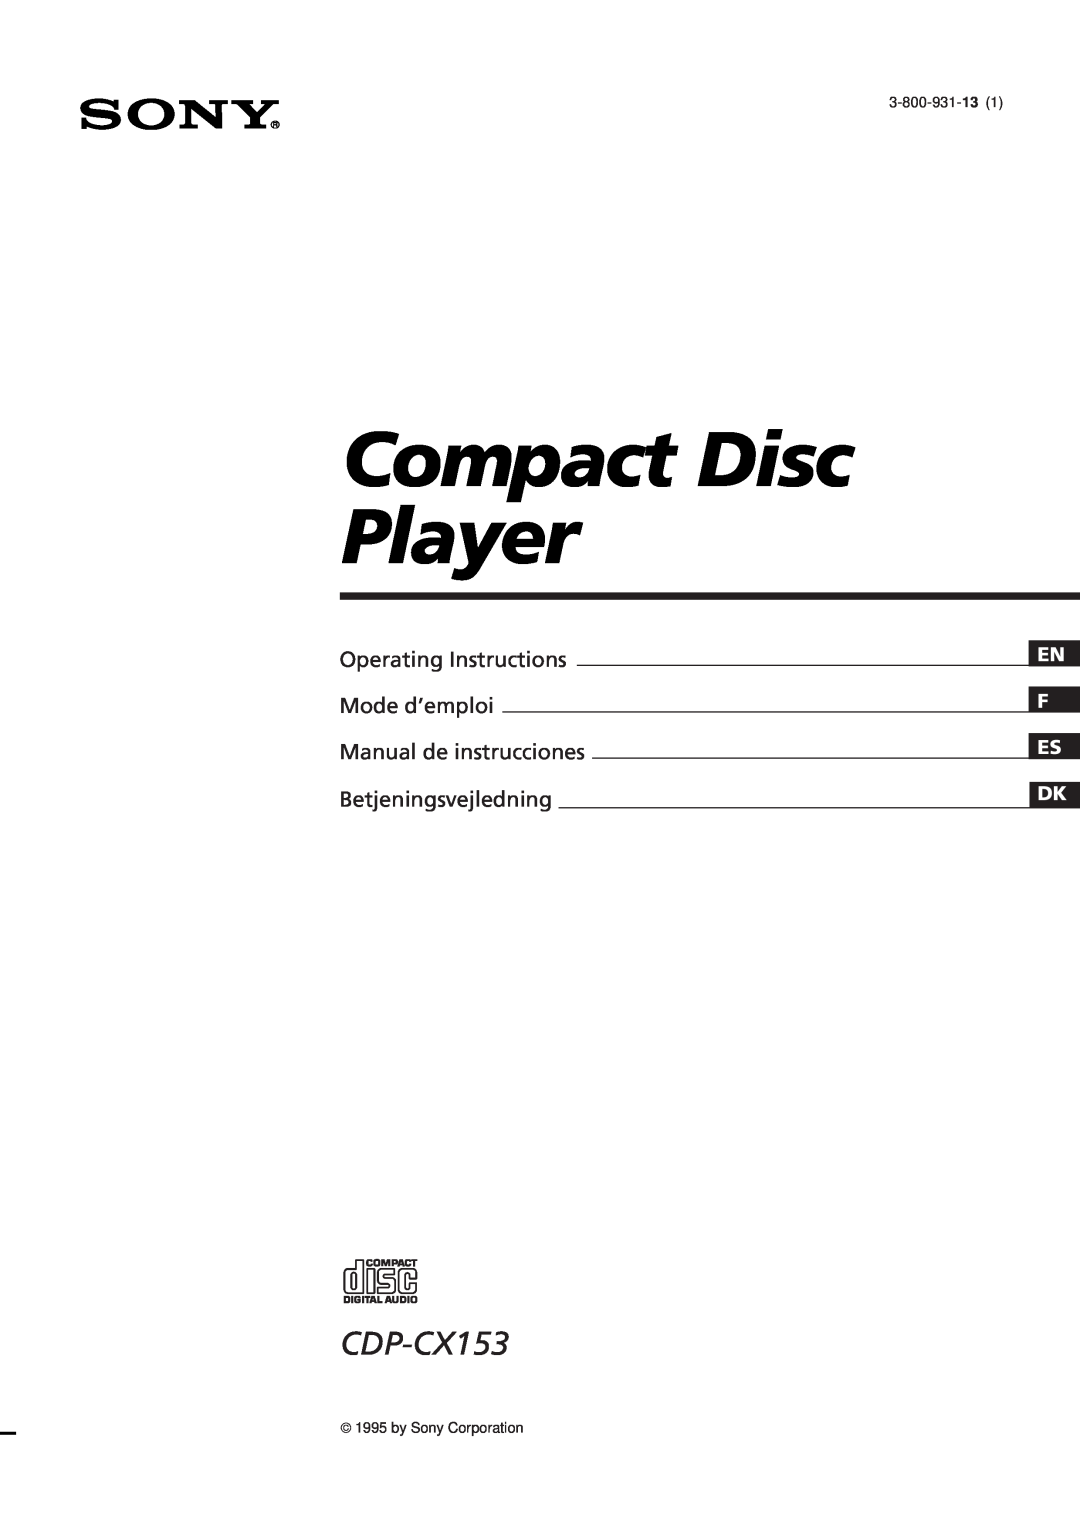 Sony CDP-CX153 manual Operating Instructions Mode d’emploi, Manual de instrucciones Betjeningsvejledning, En F Es Dk 